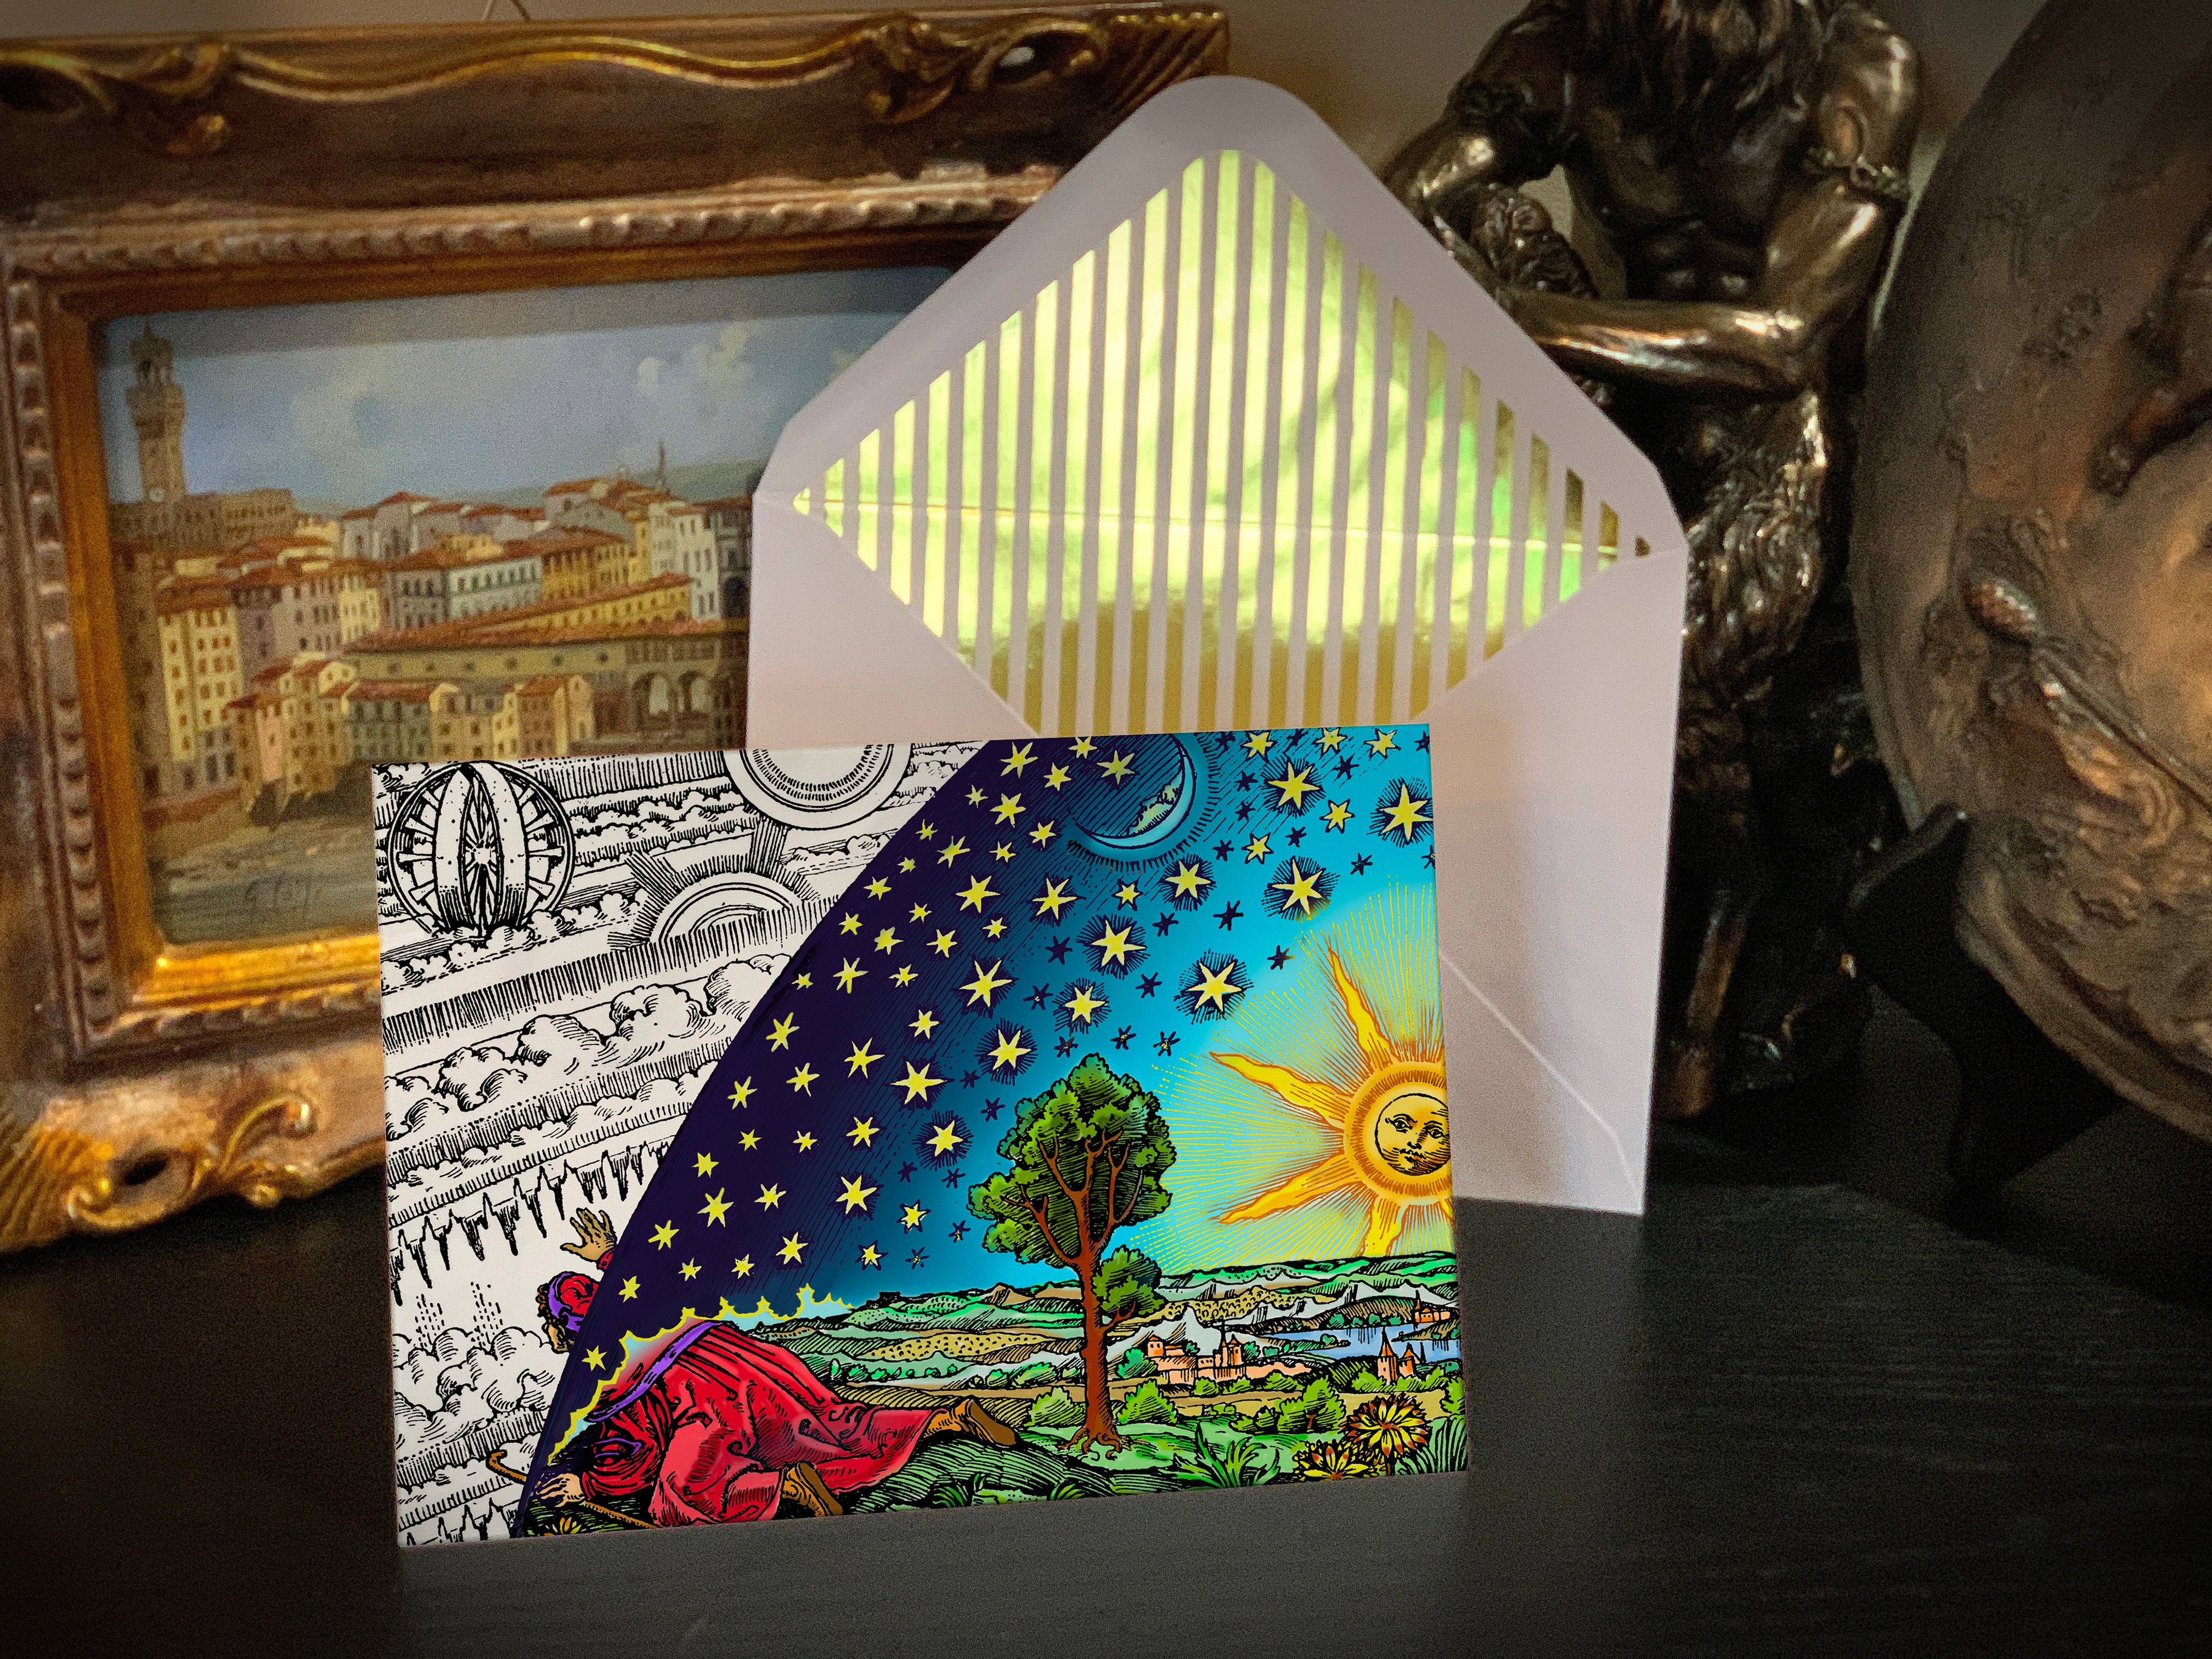 Flammarion, Celestial Greeting Card with Elegant Striped Gold Foil Envelope, 1 Card/Envelope